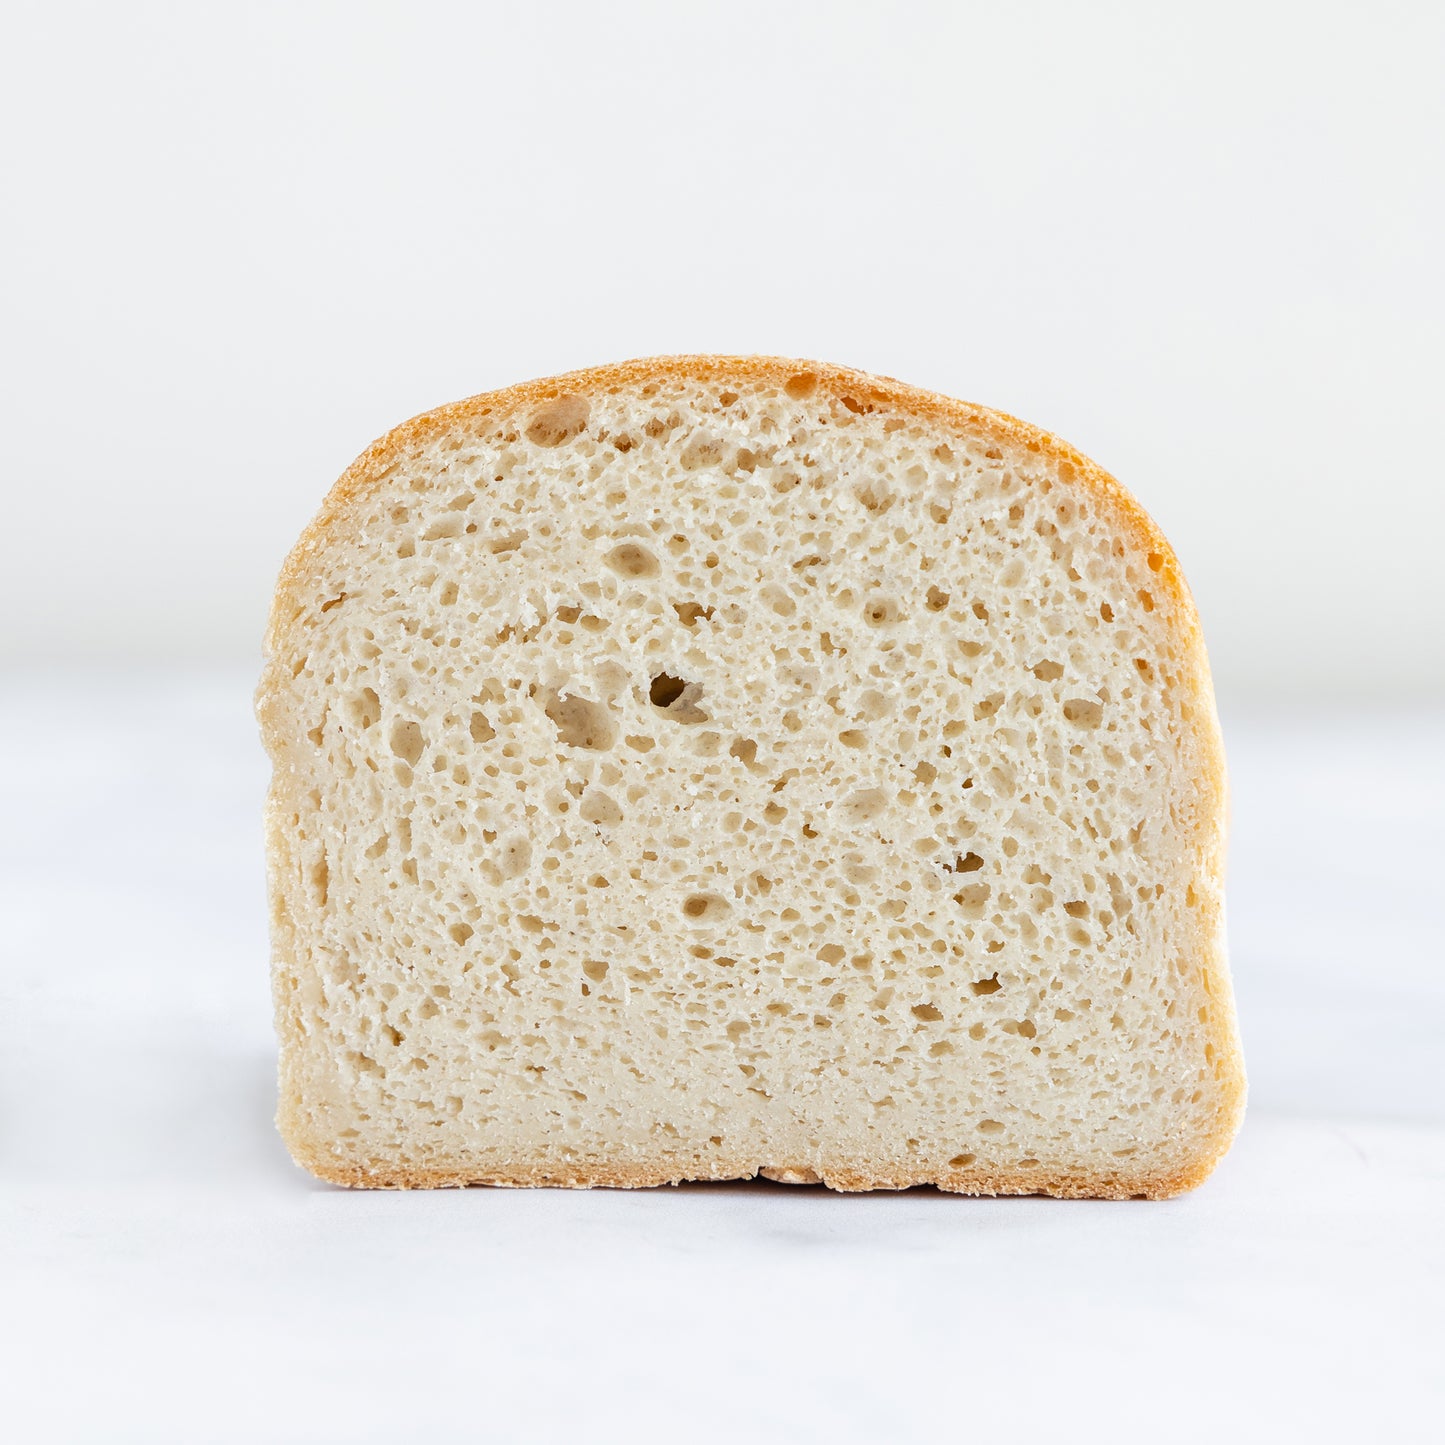 White square yeast bread